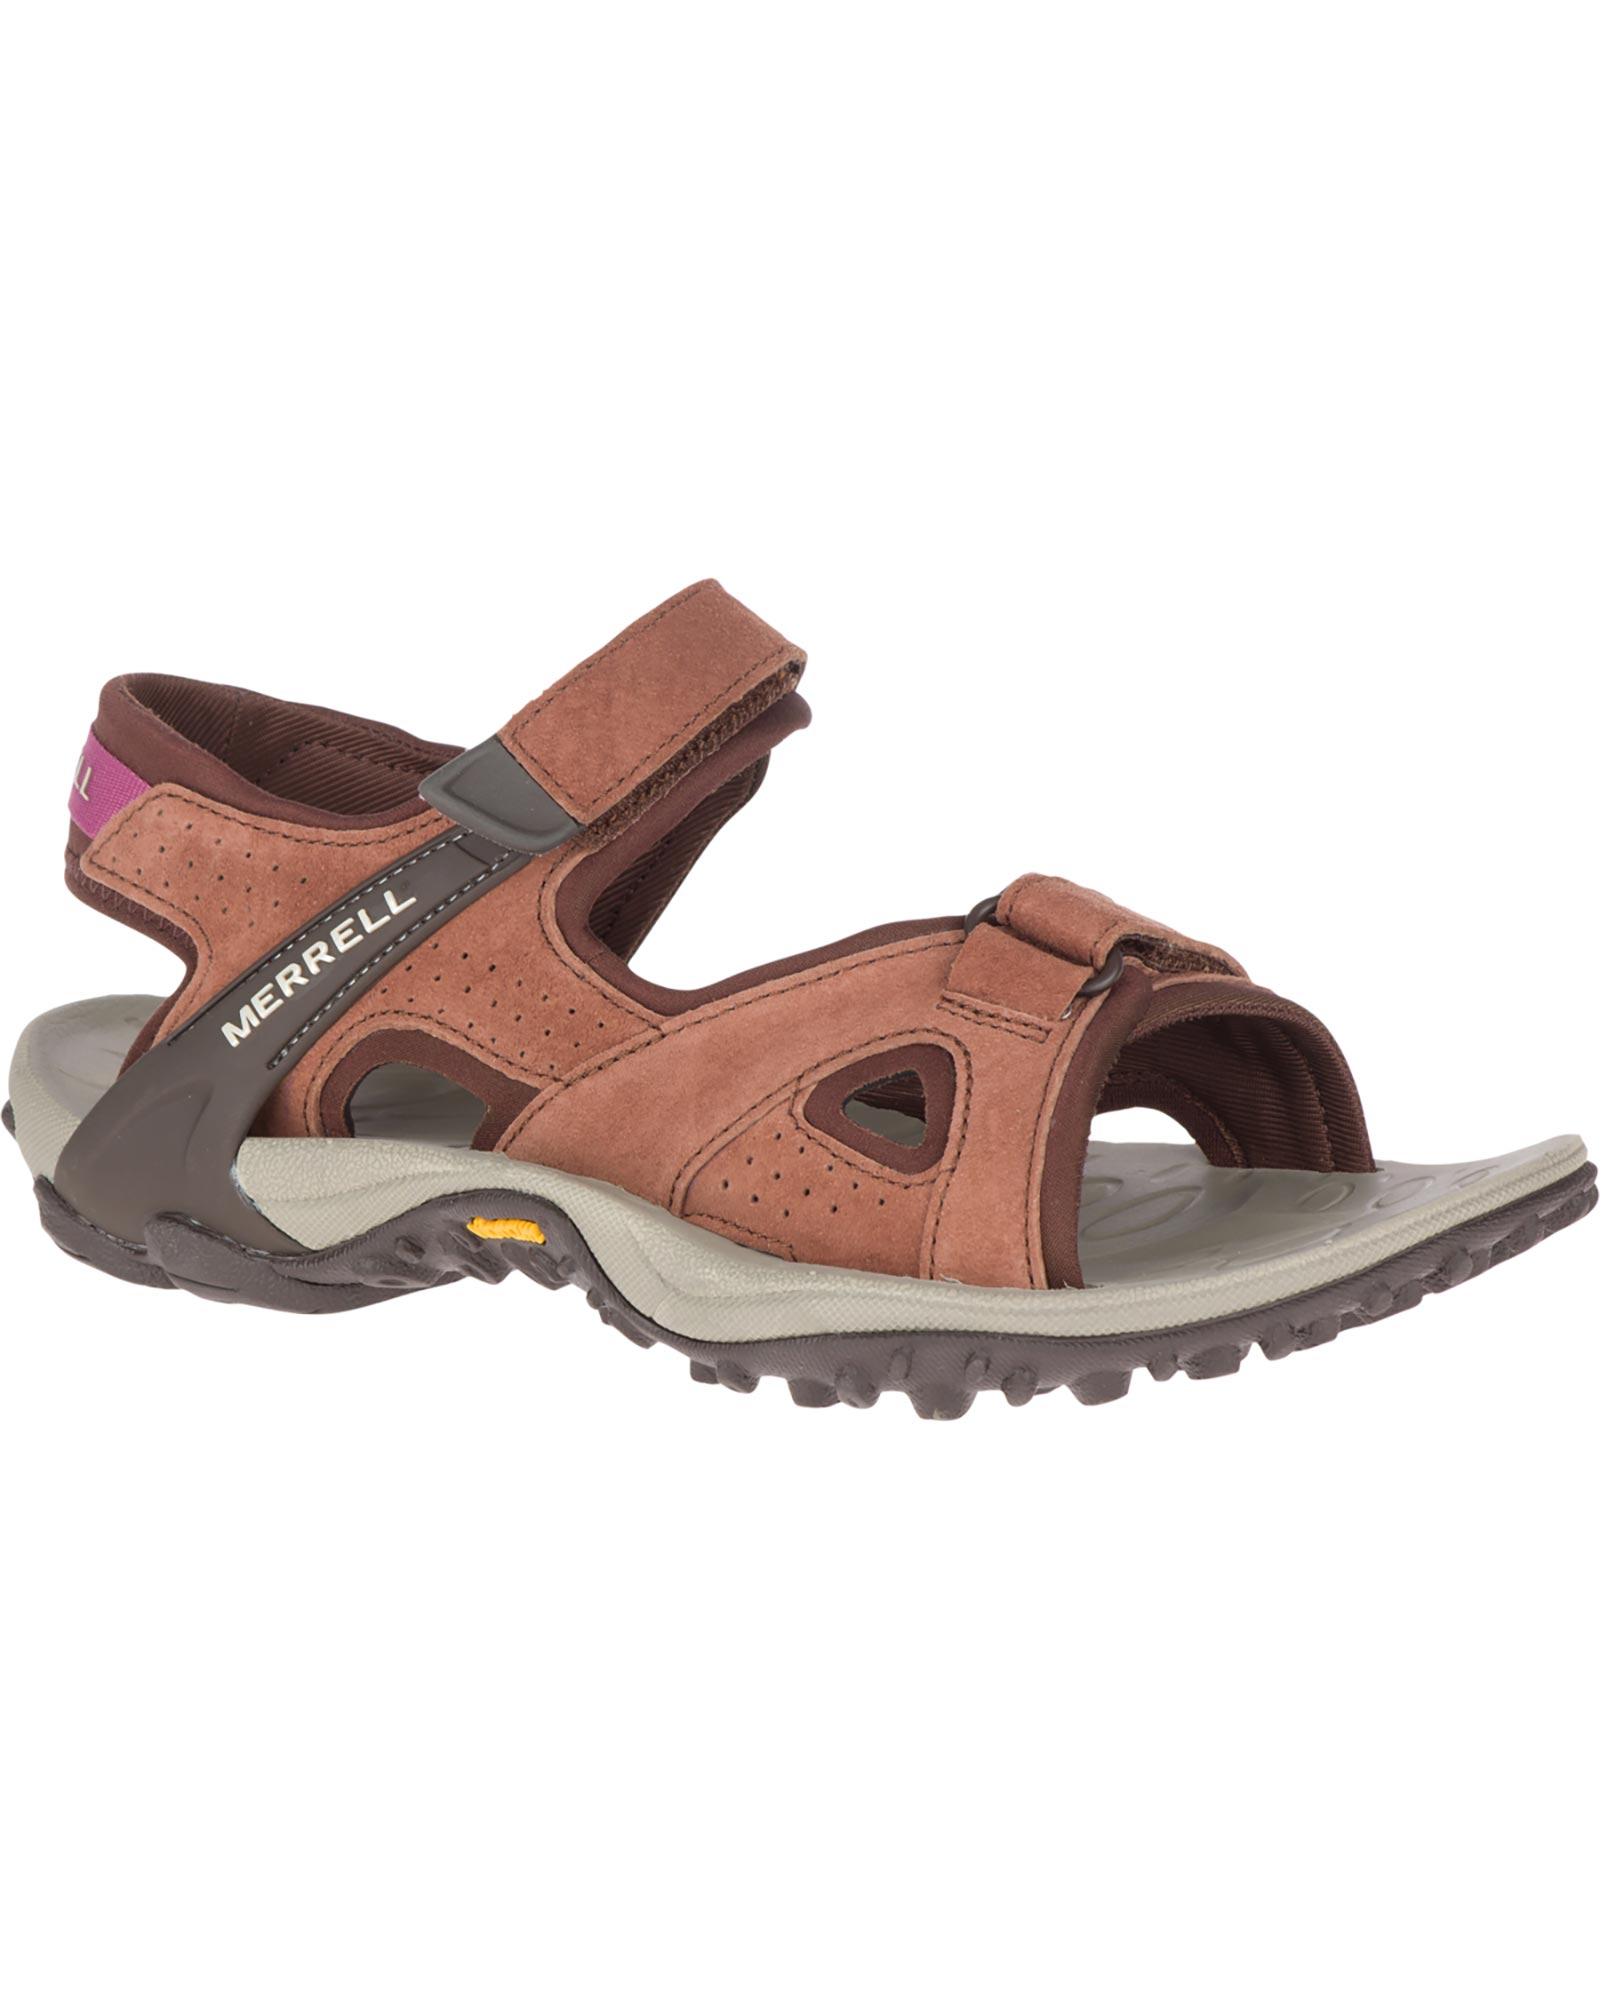 Merrell Kahuna 4 Strap Women’s Sandals - Choc UK 7